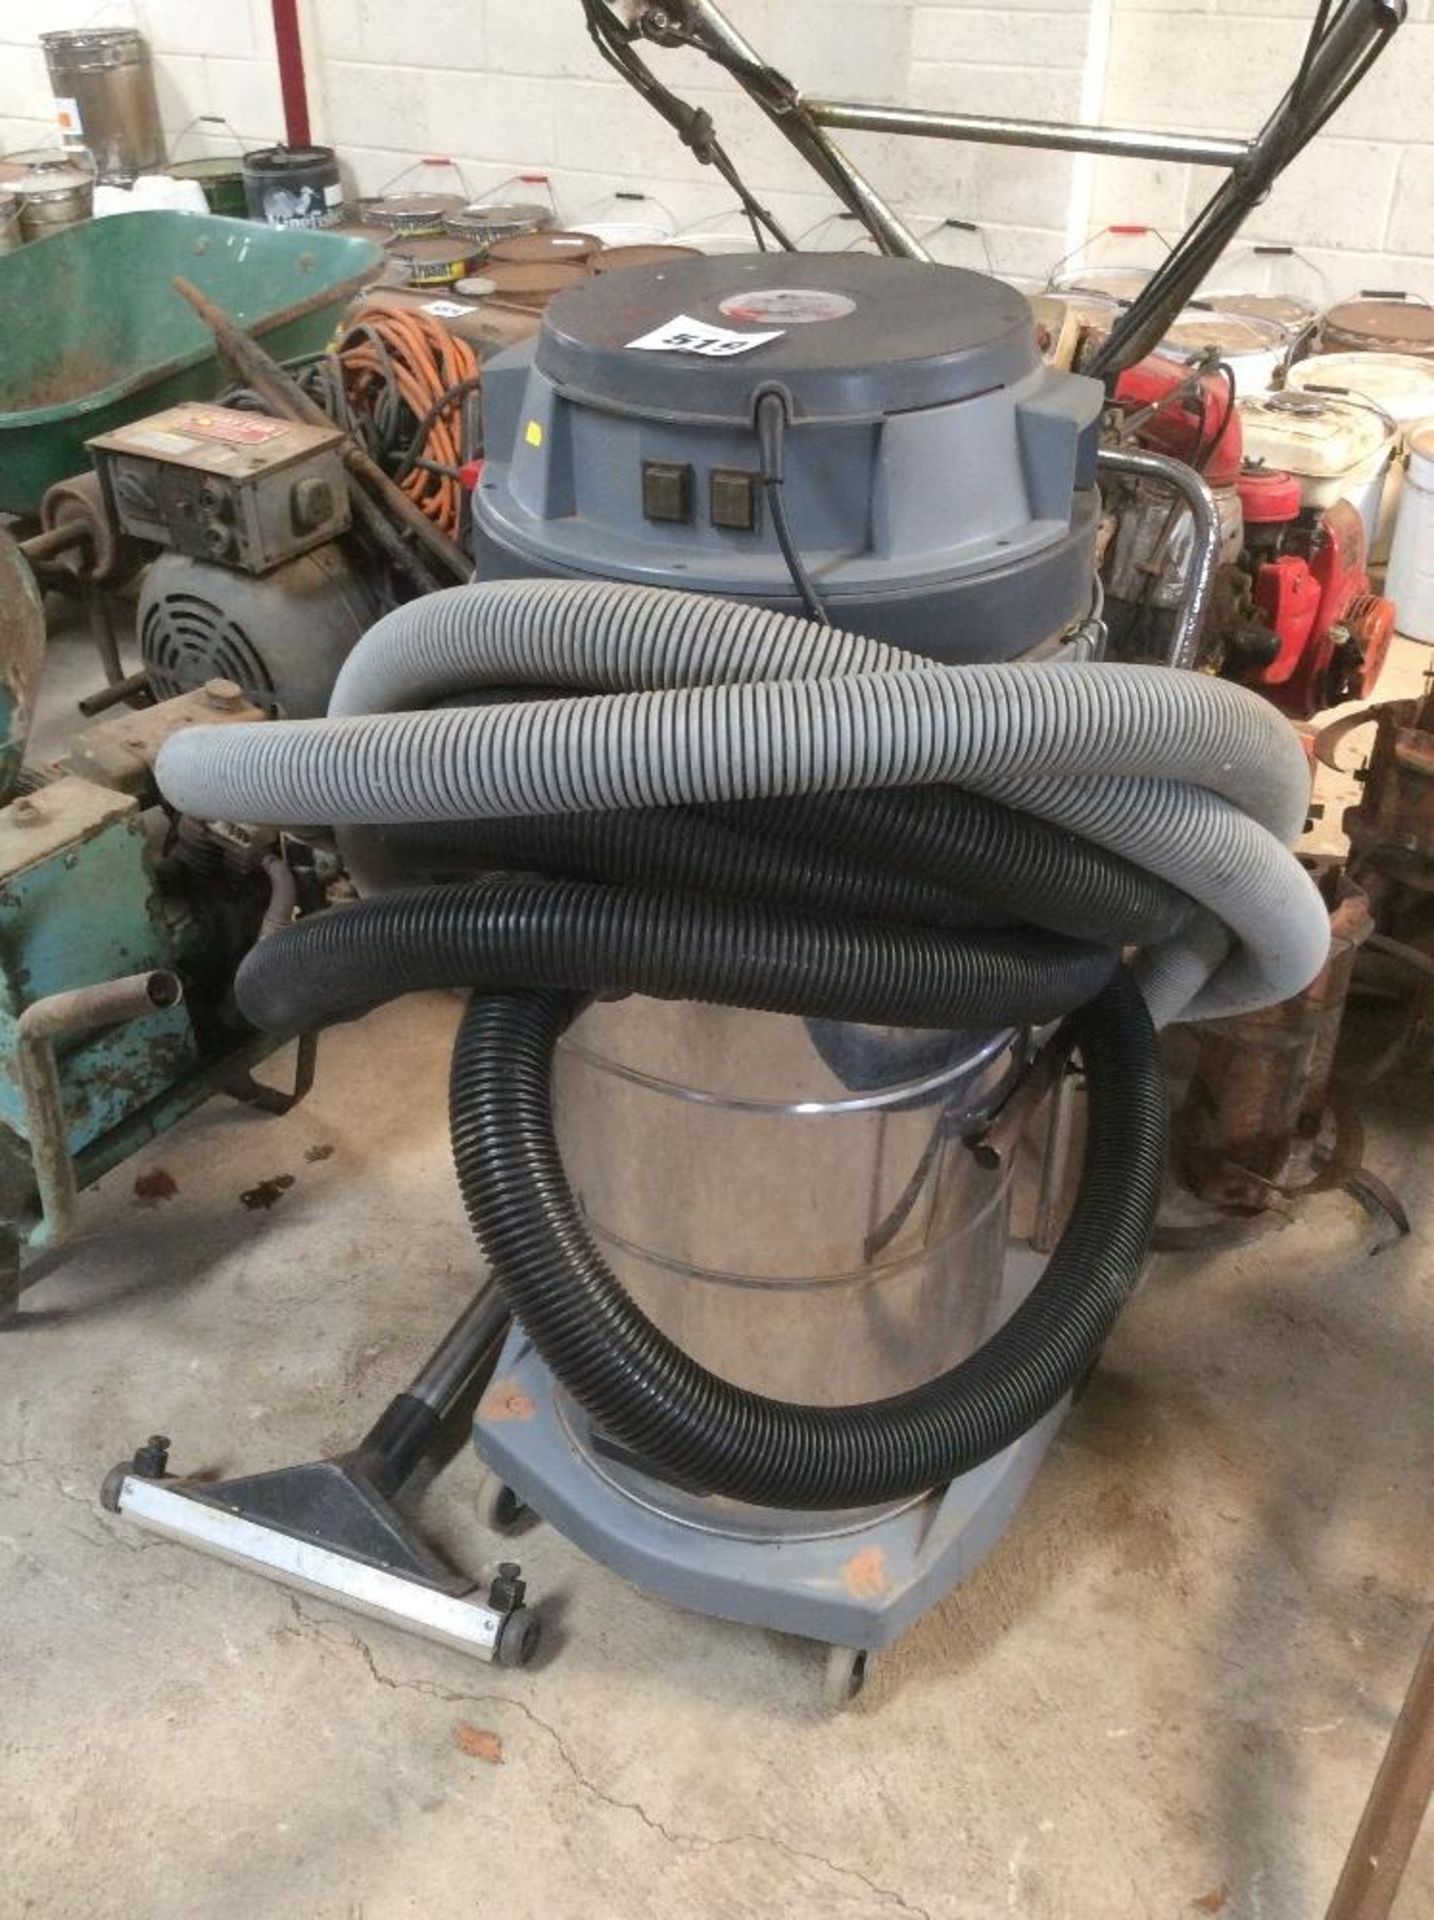 TMC Industrial vacuum with range of hoses